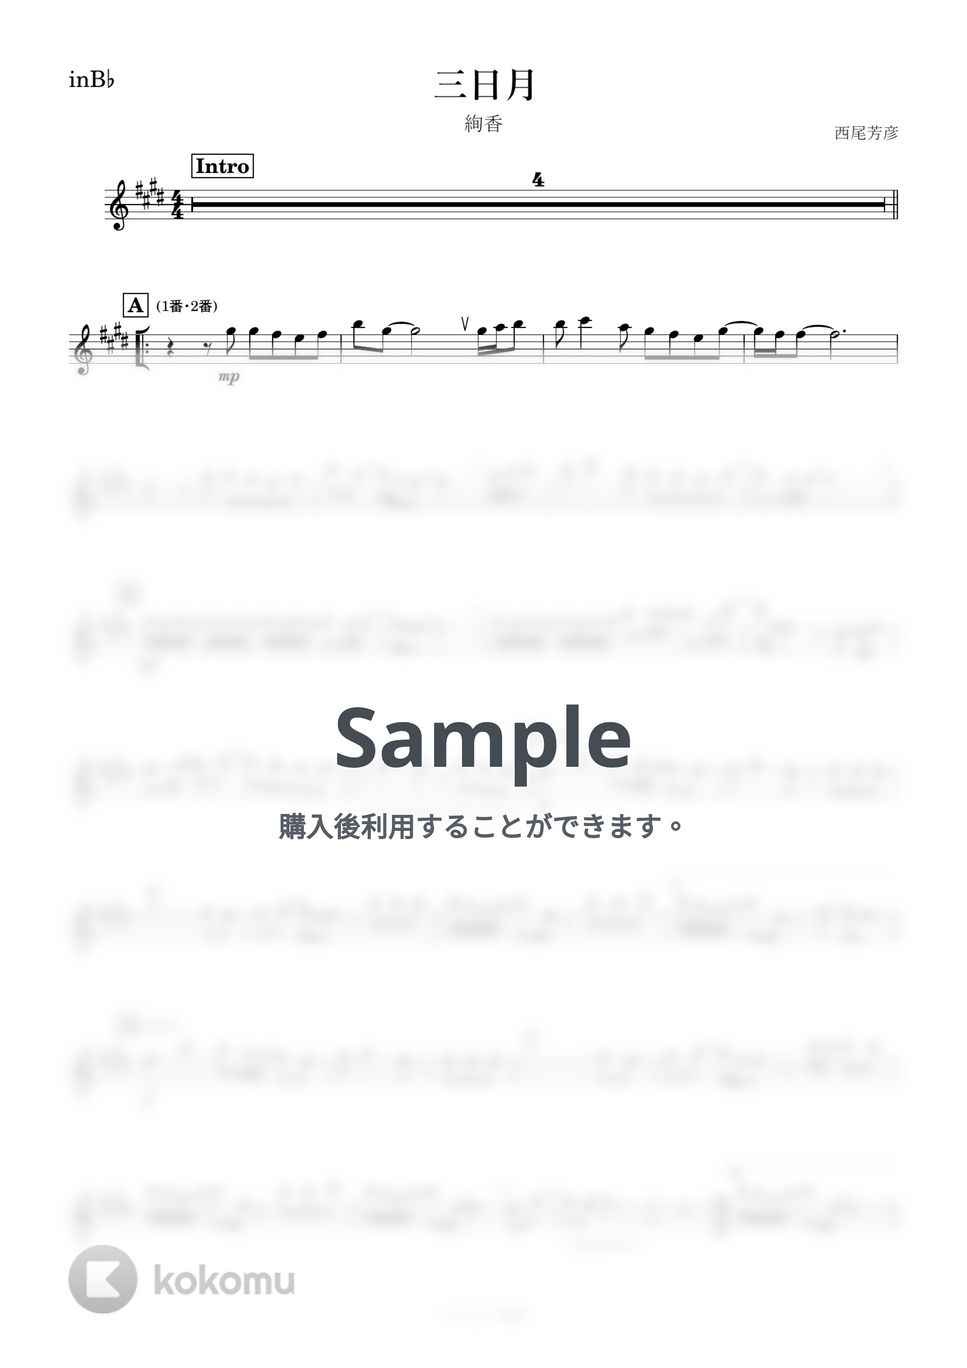 絢香 - 三日月 (B♭) by kanamusic